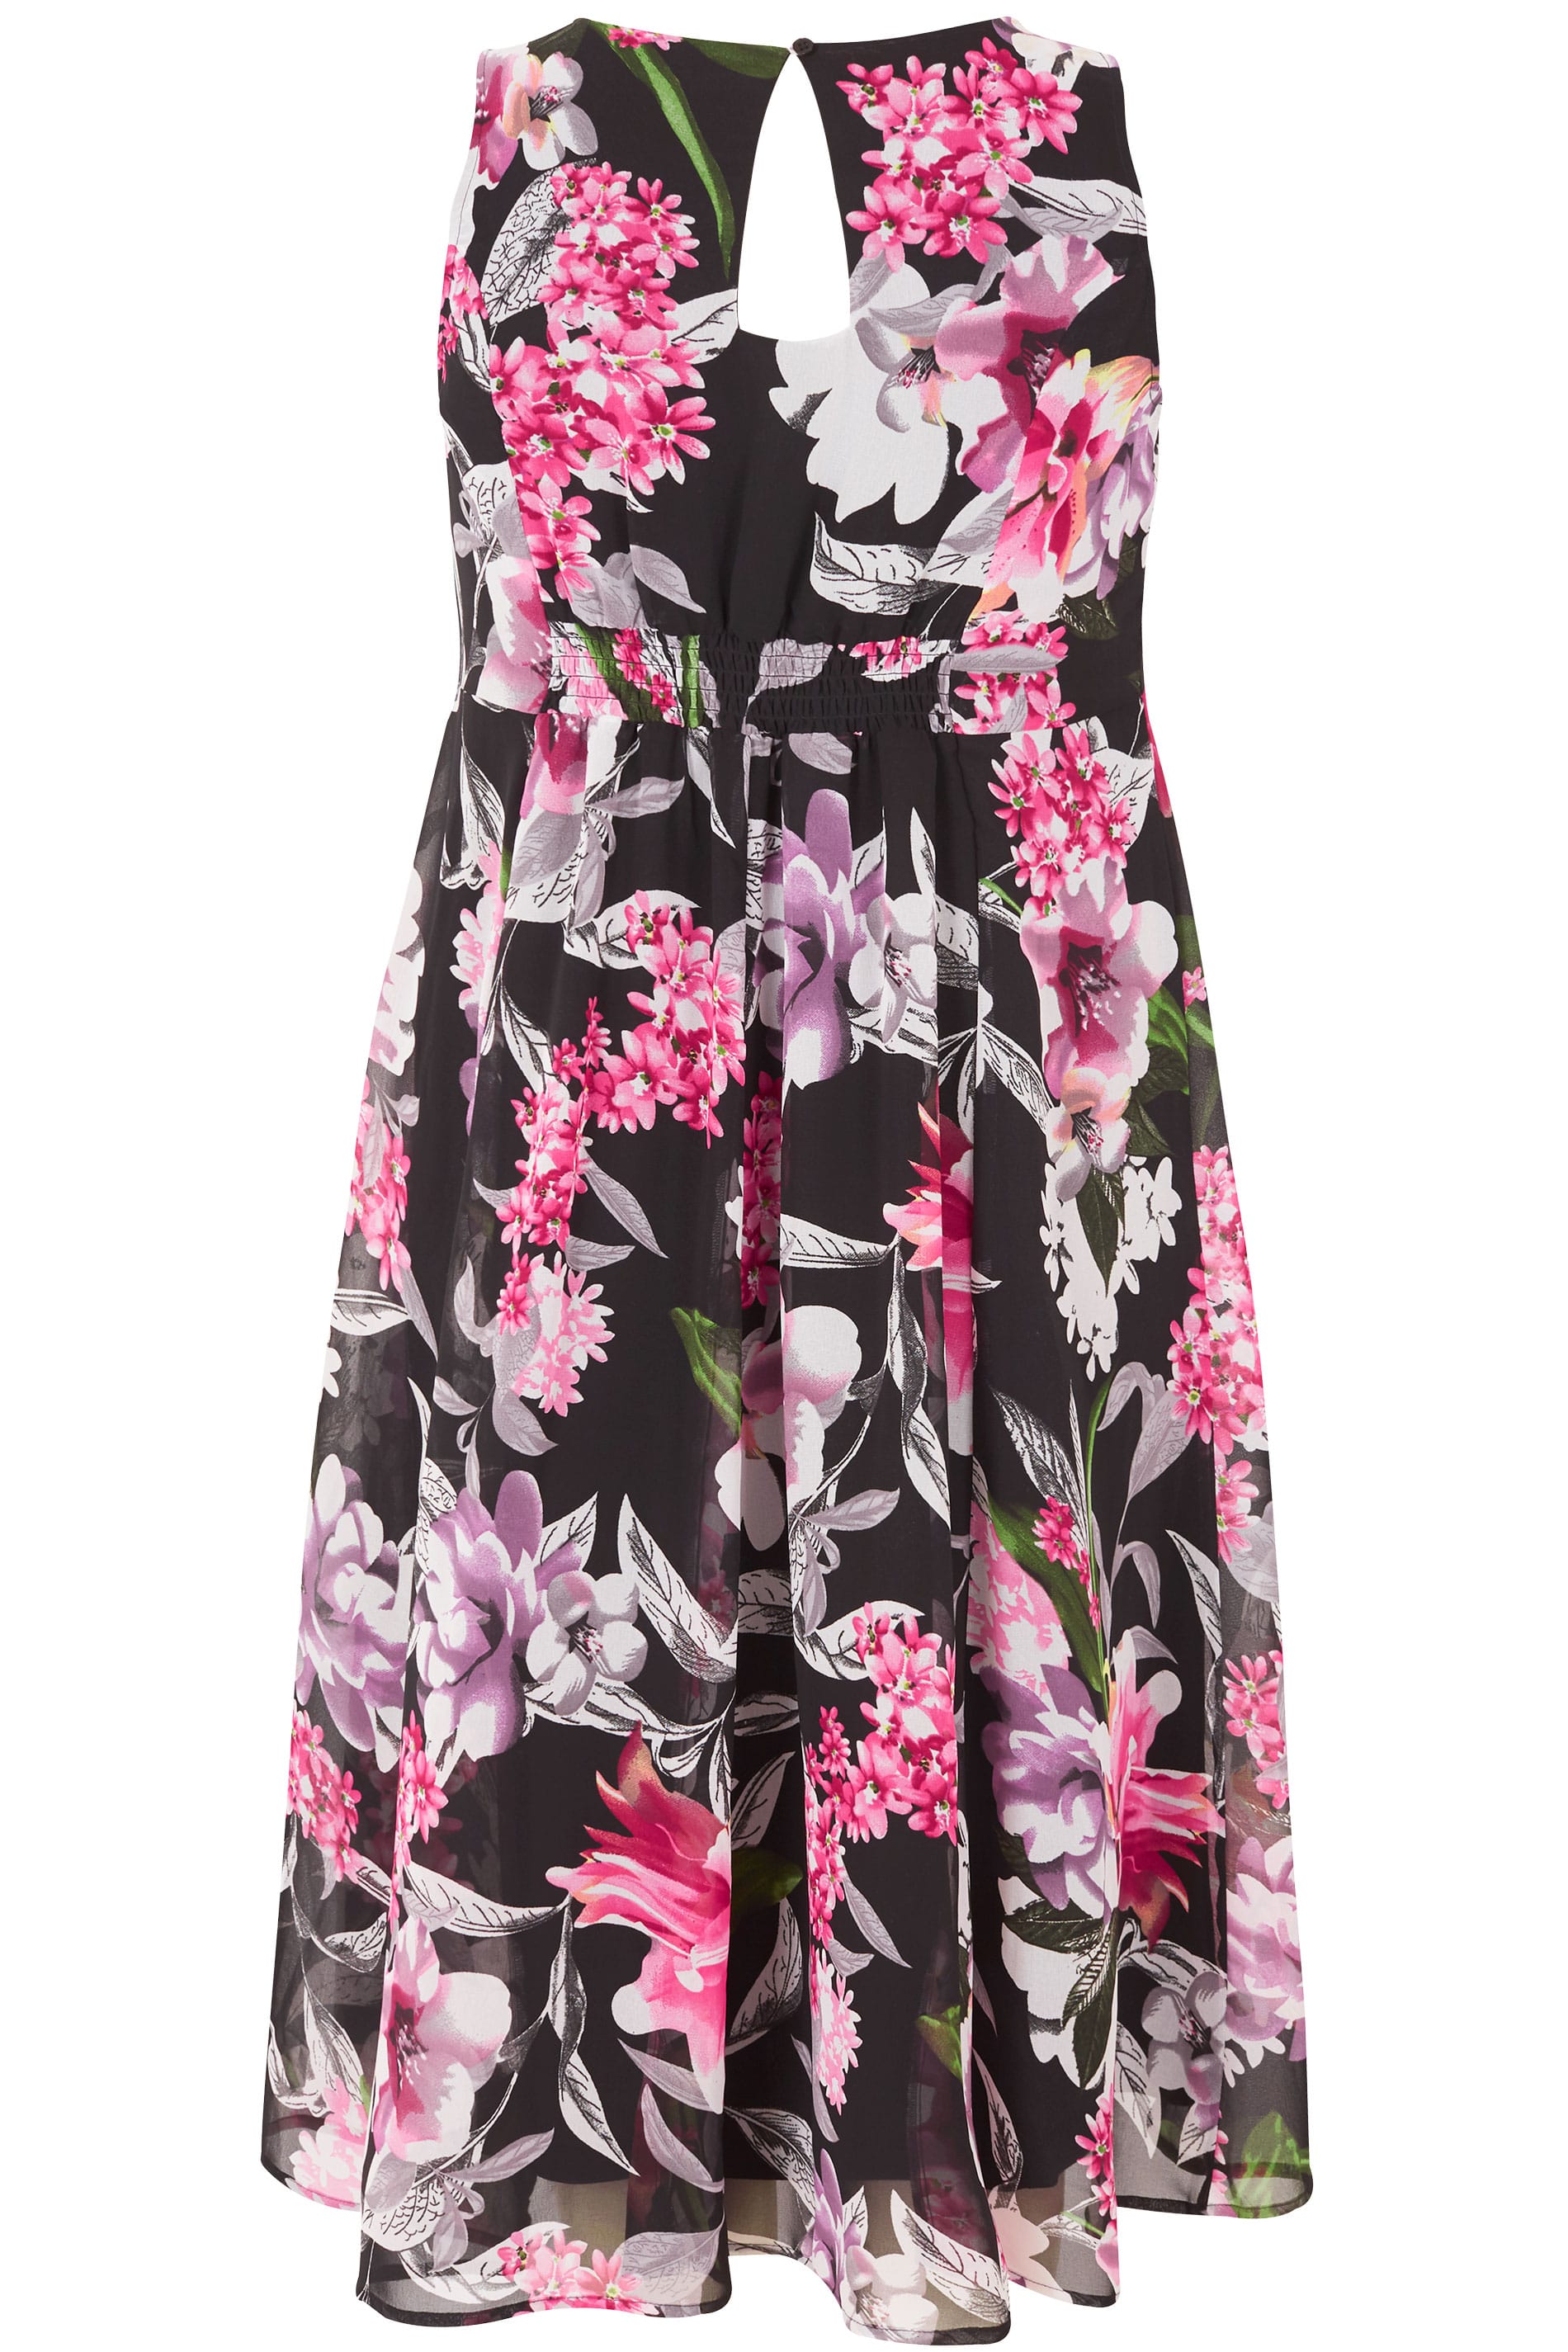 Black & Pink Floral Skater Dress, plus size 16 to 36